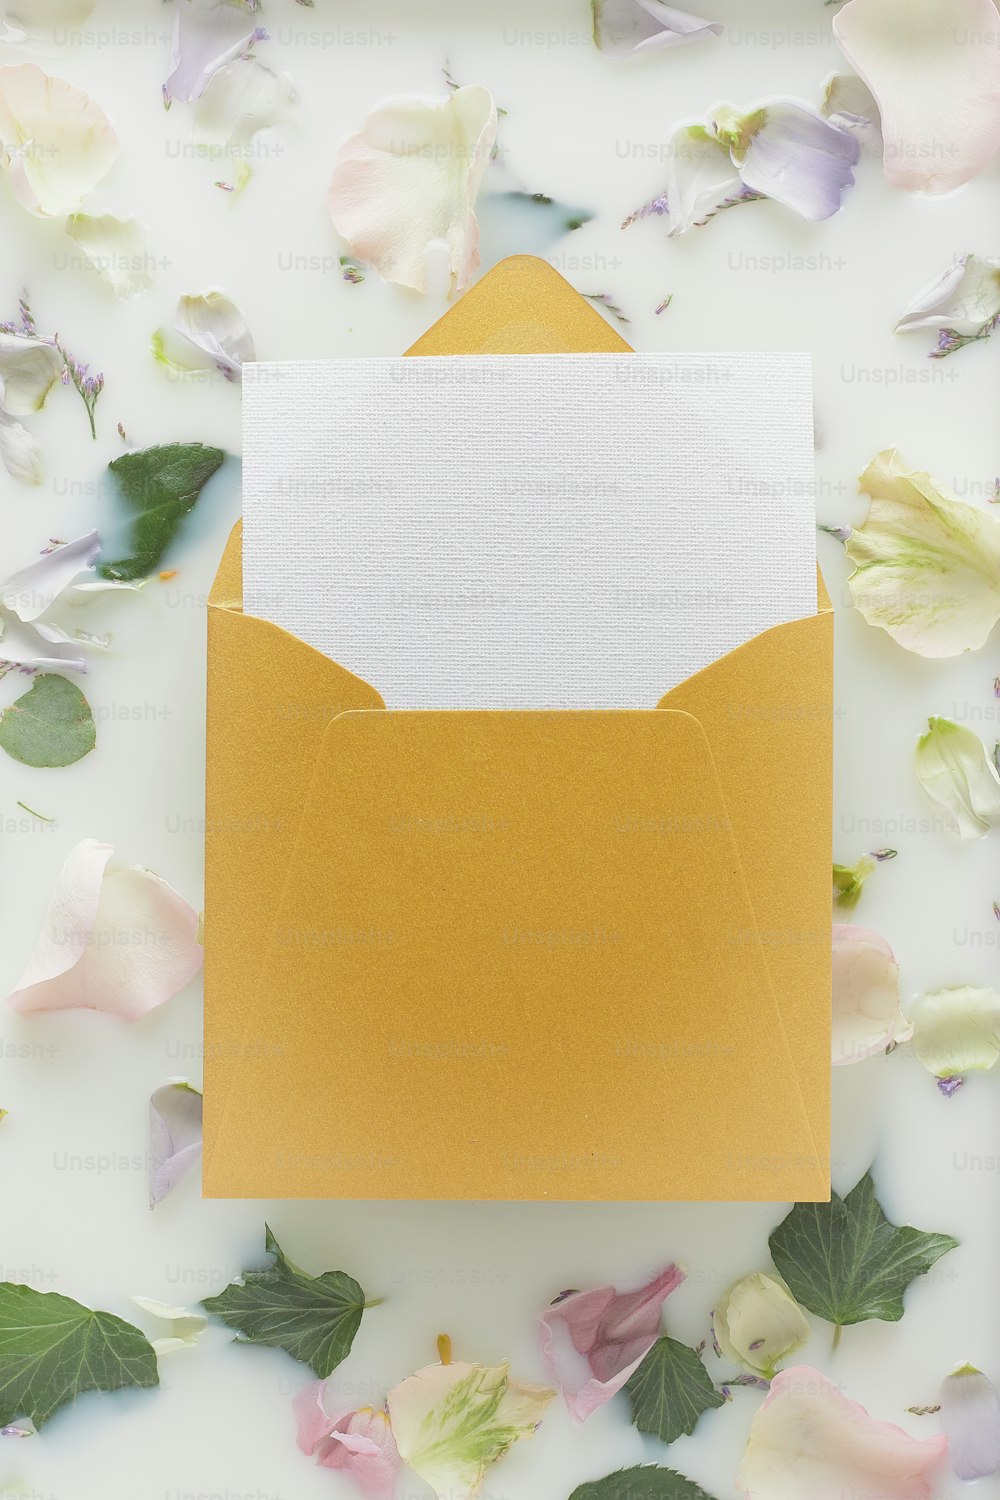 una busta gialla con all'interno un cartellino bianco circondato da fiori